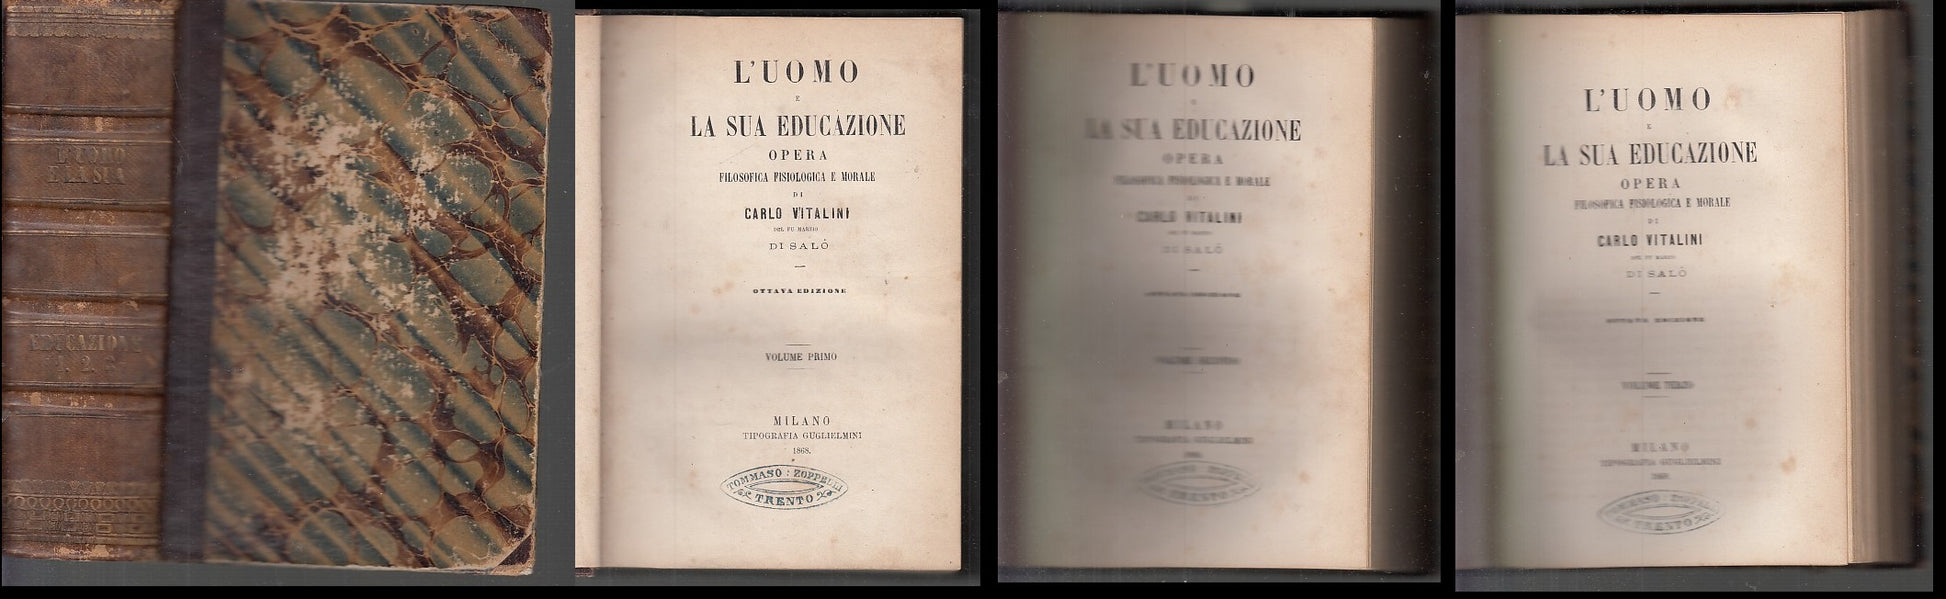 LH- UOMO E LA SUA EDUCAZIONE - VITALINI - GUGLIELMINI MILANO--- 1868- C- XDS131